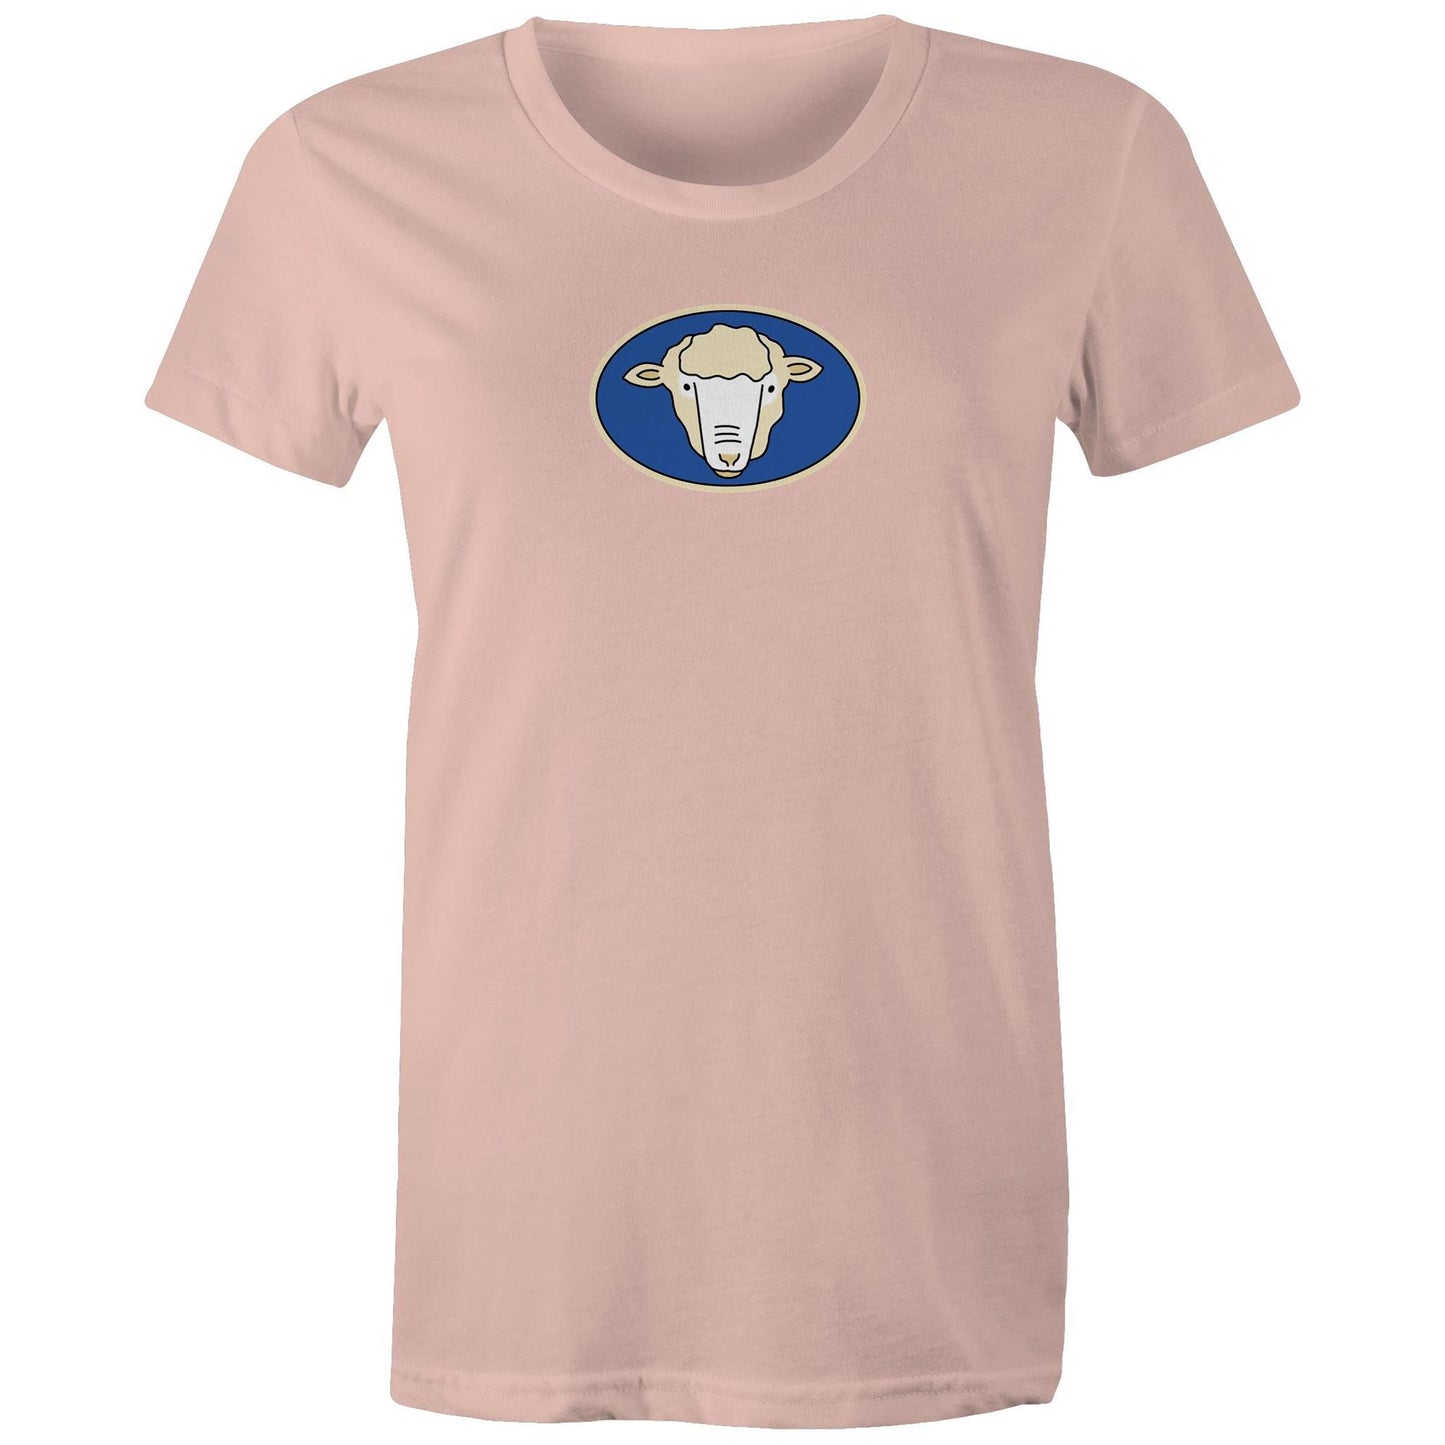 Butcher Shop Café T Shirts for Women